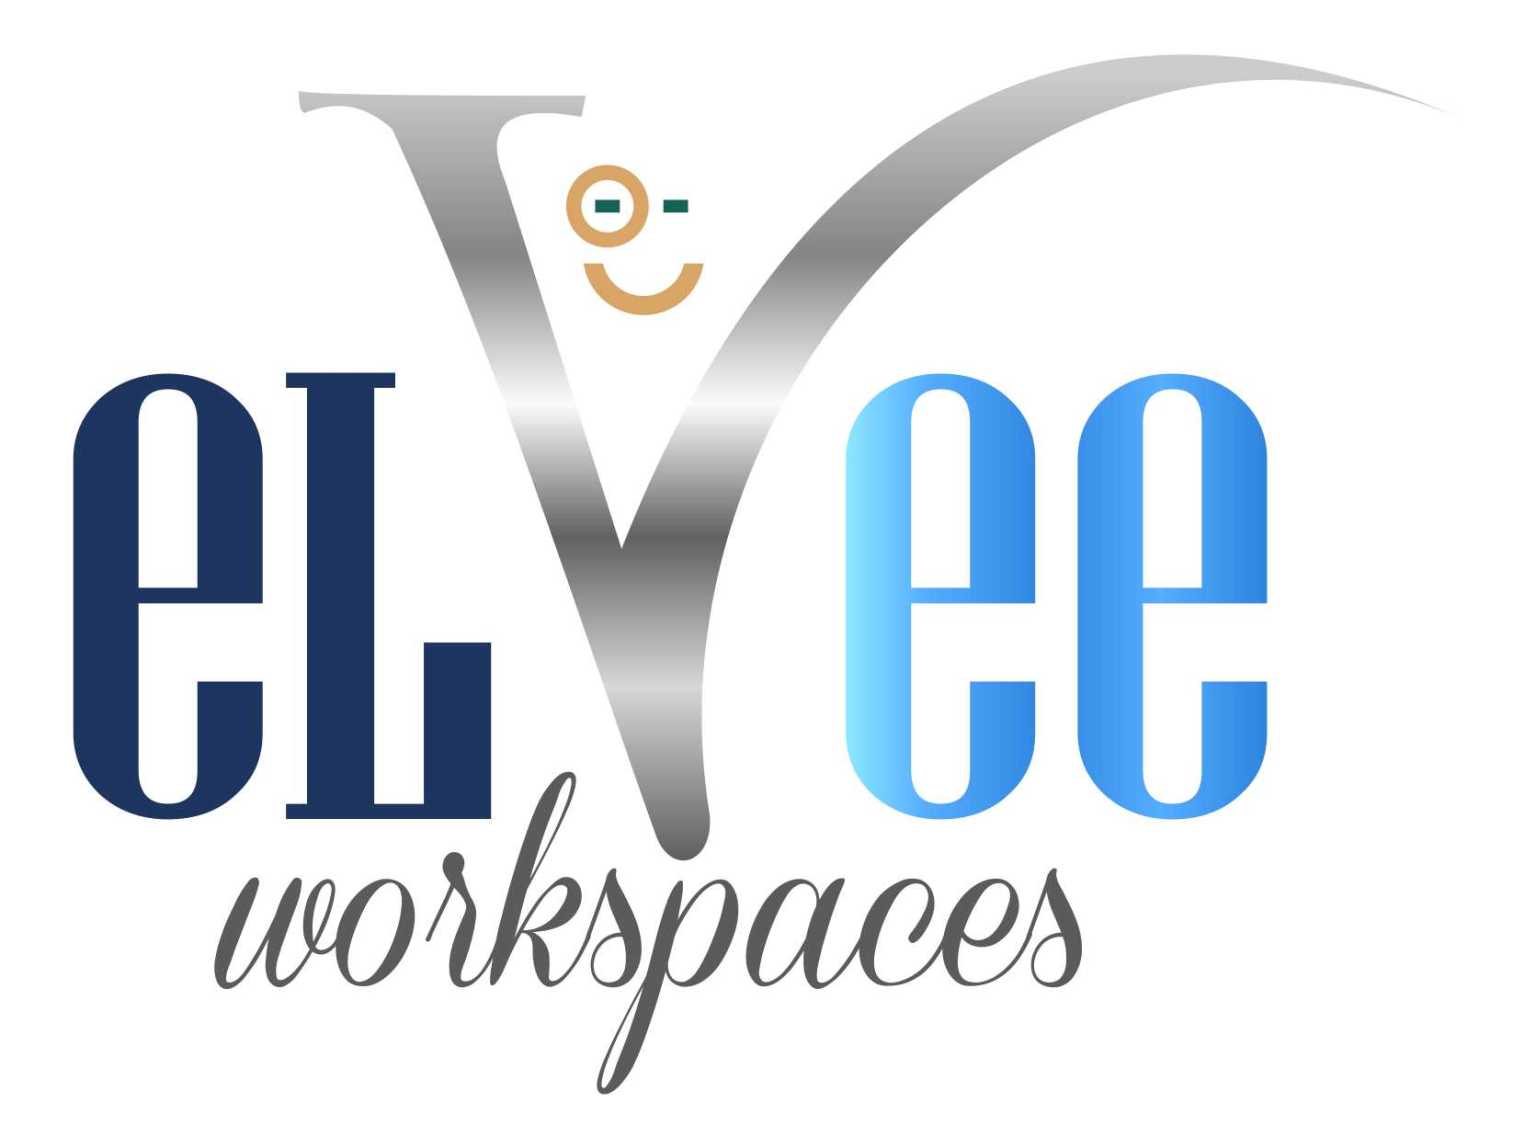 Elvee Workspaces